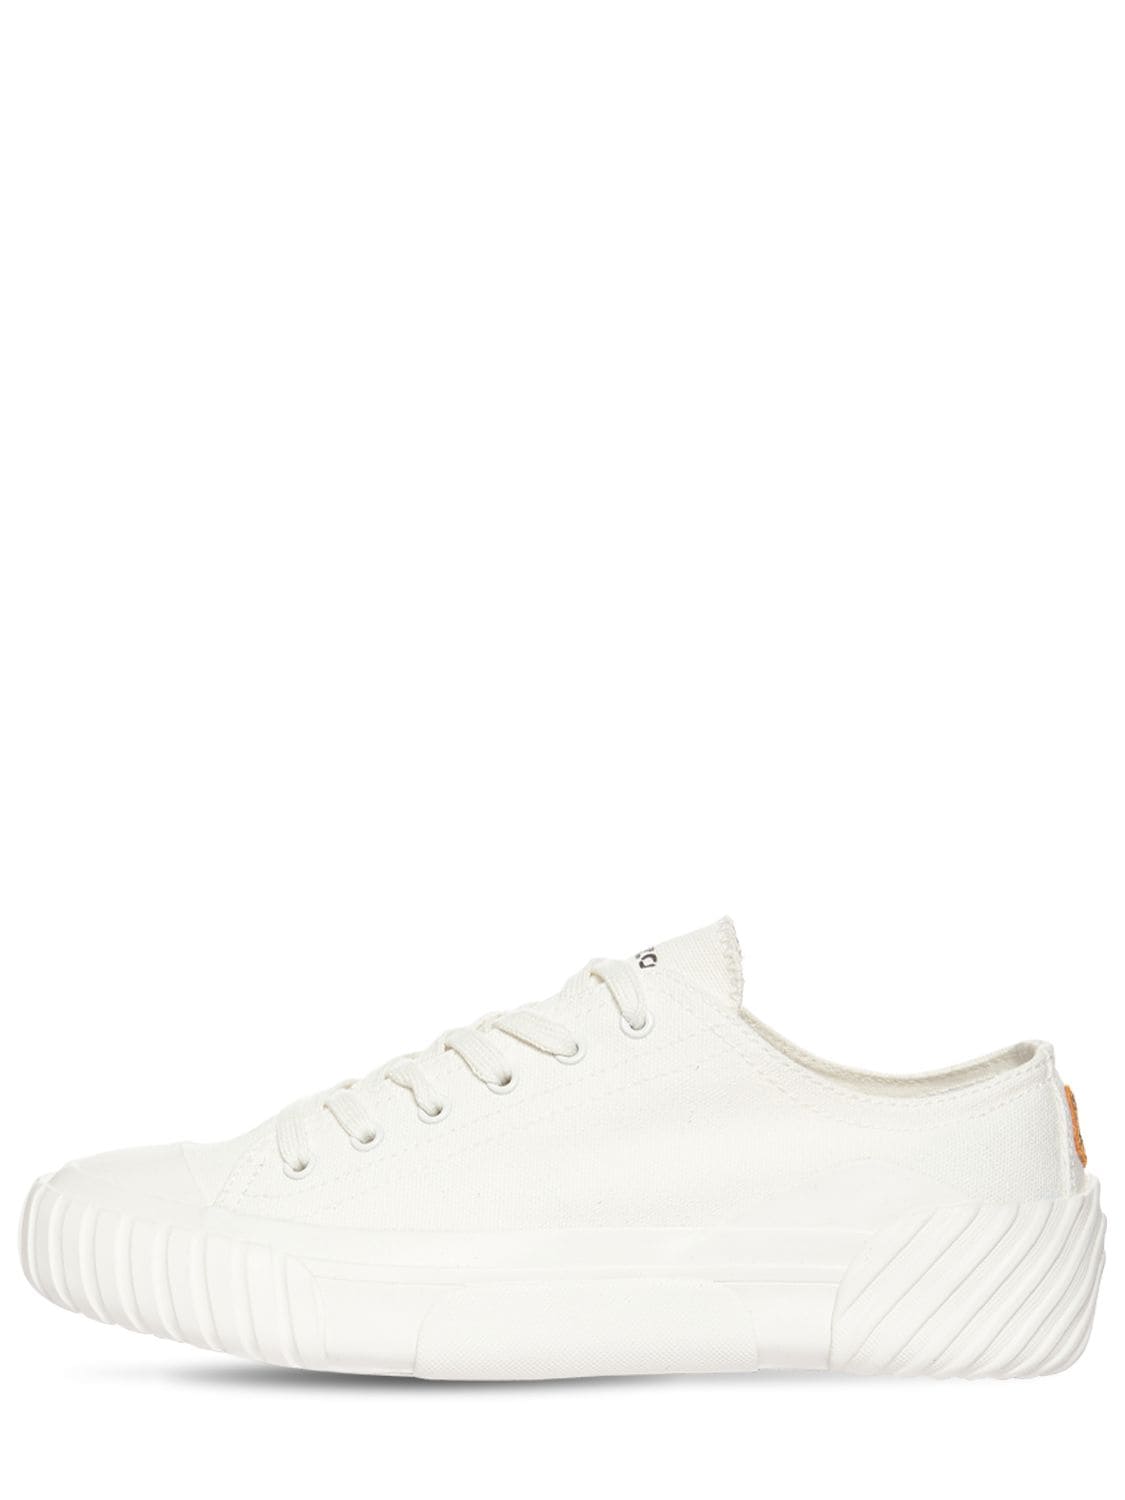 KENZO Slip-On Sneaker White - FB65SN430F50-01